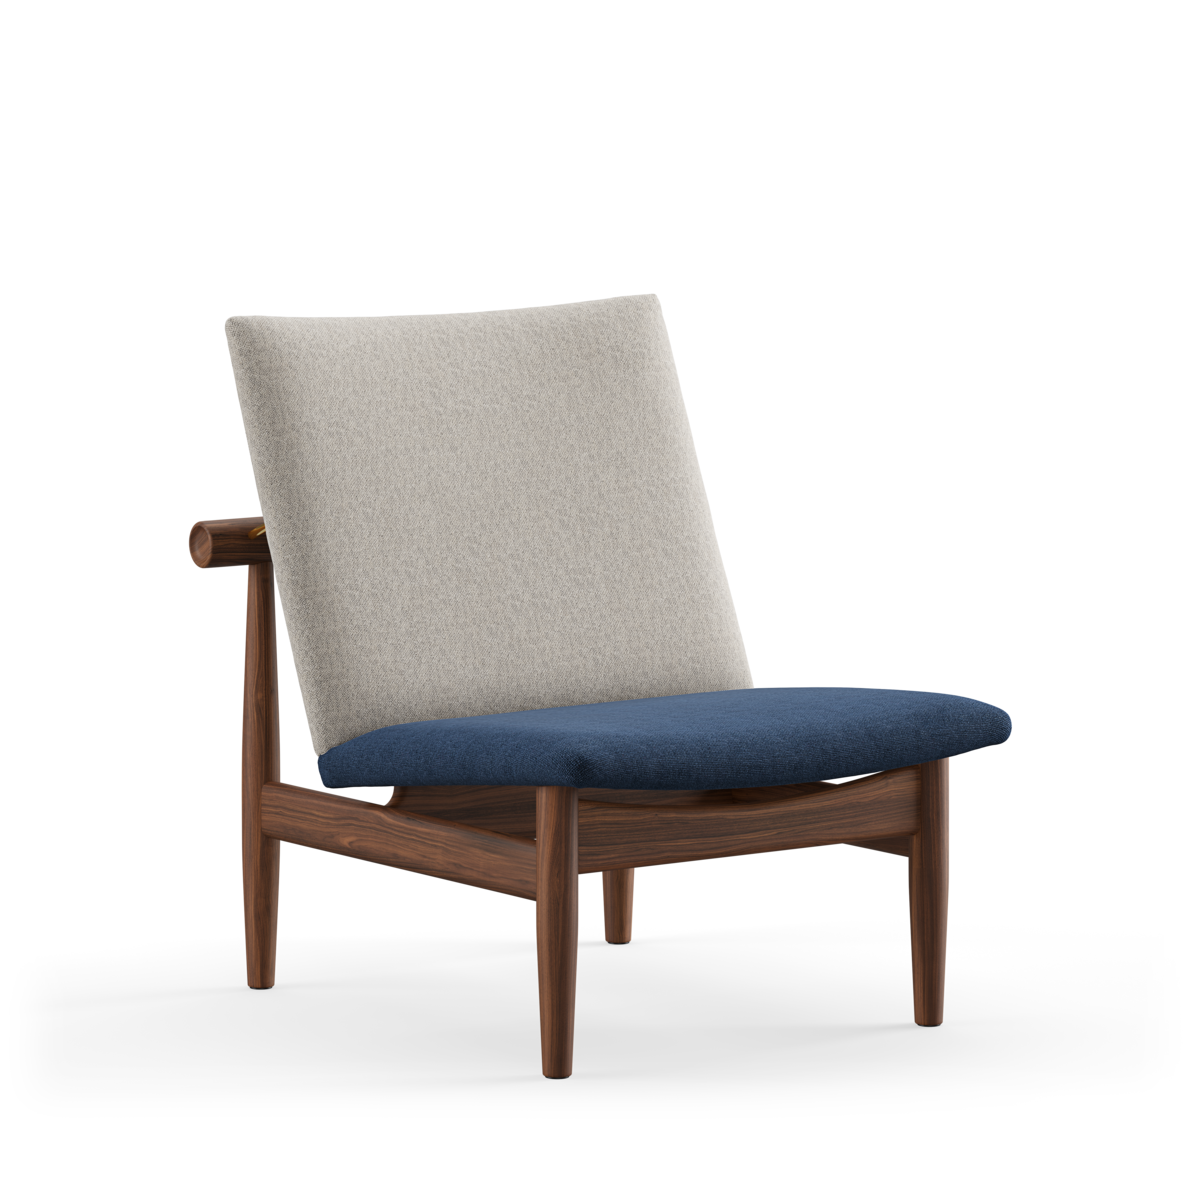 the-japan-chair-by-finn-juhl-fj-5301-danord